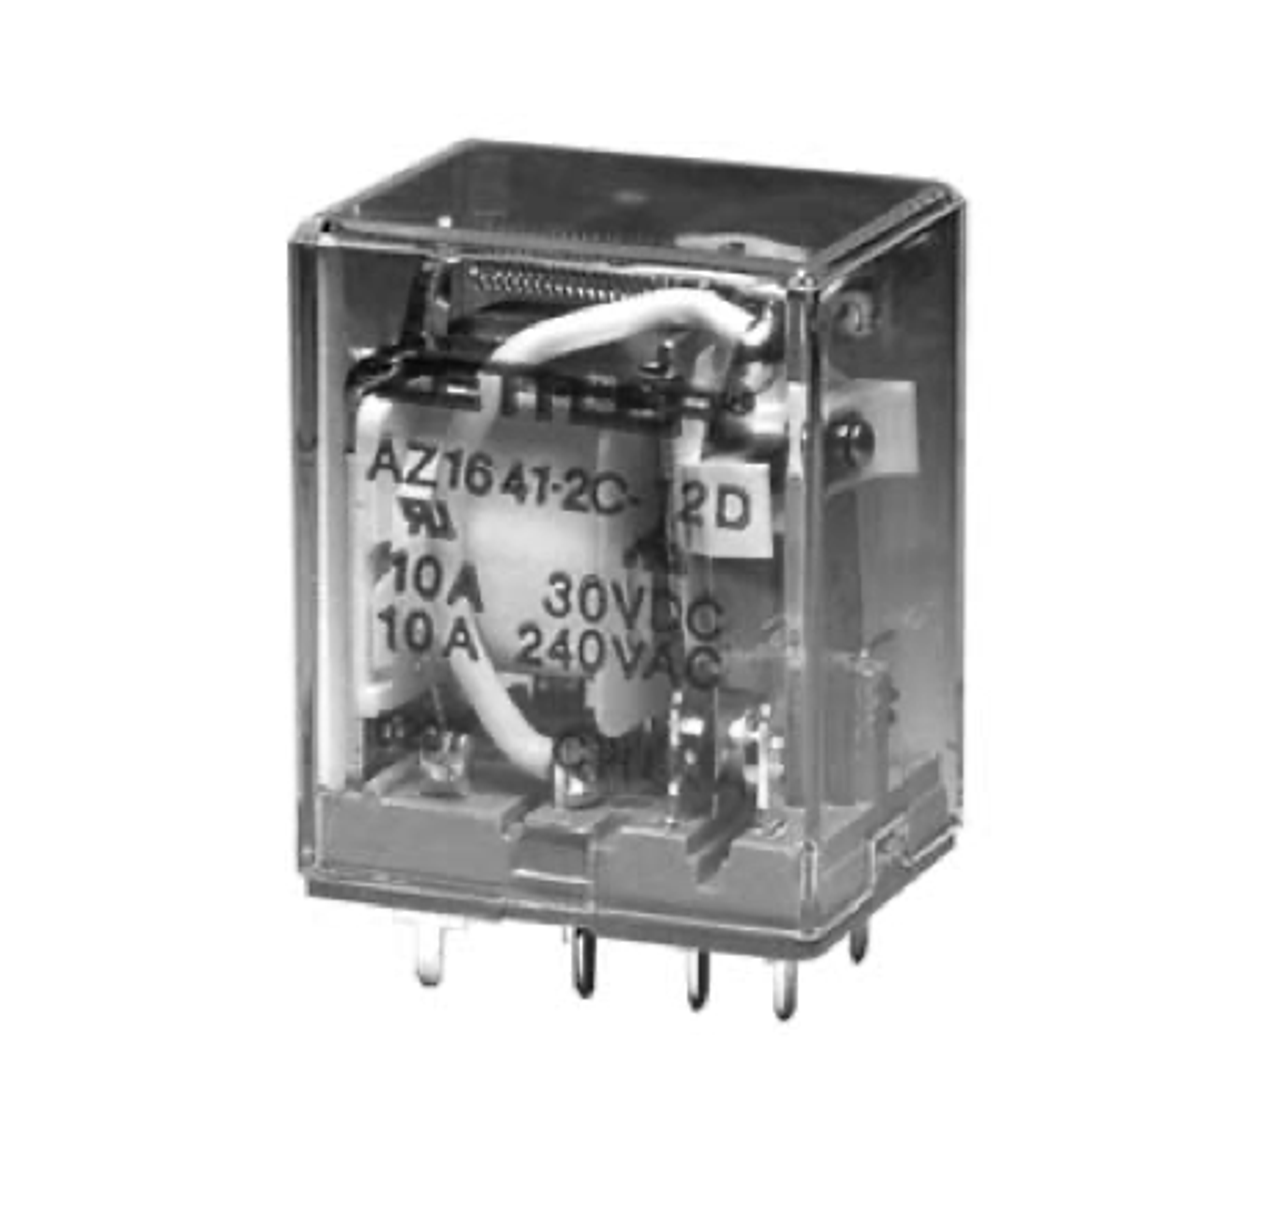 American Zettler AZ1641-2CT-240A Power Relay